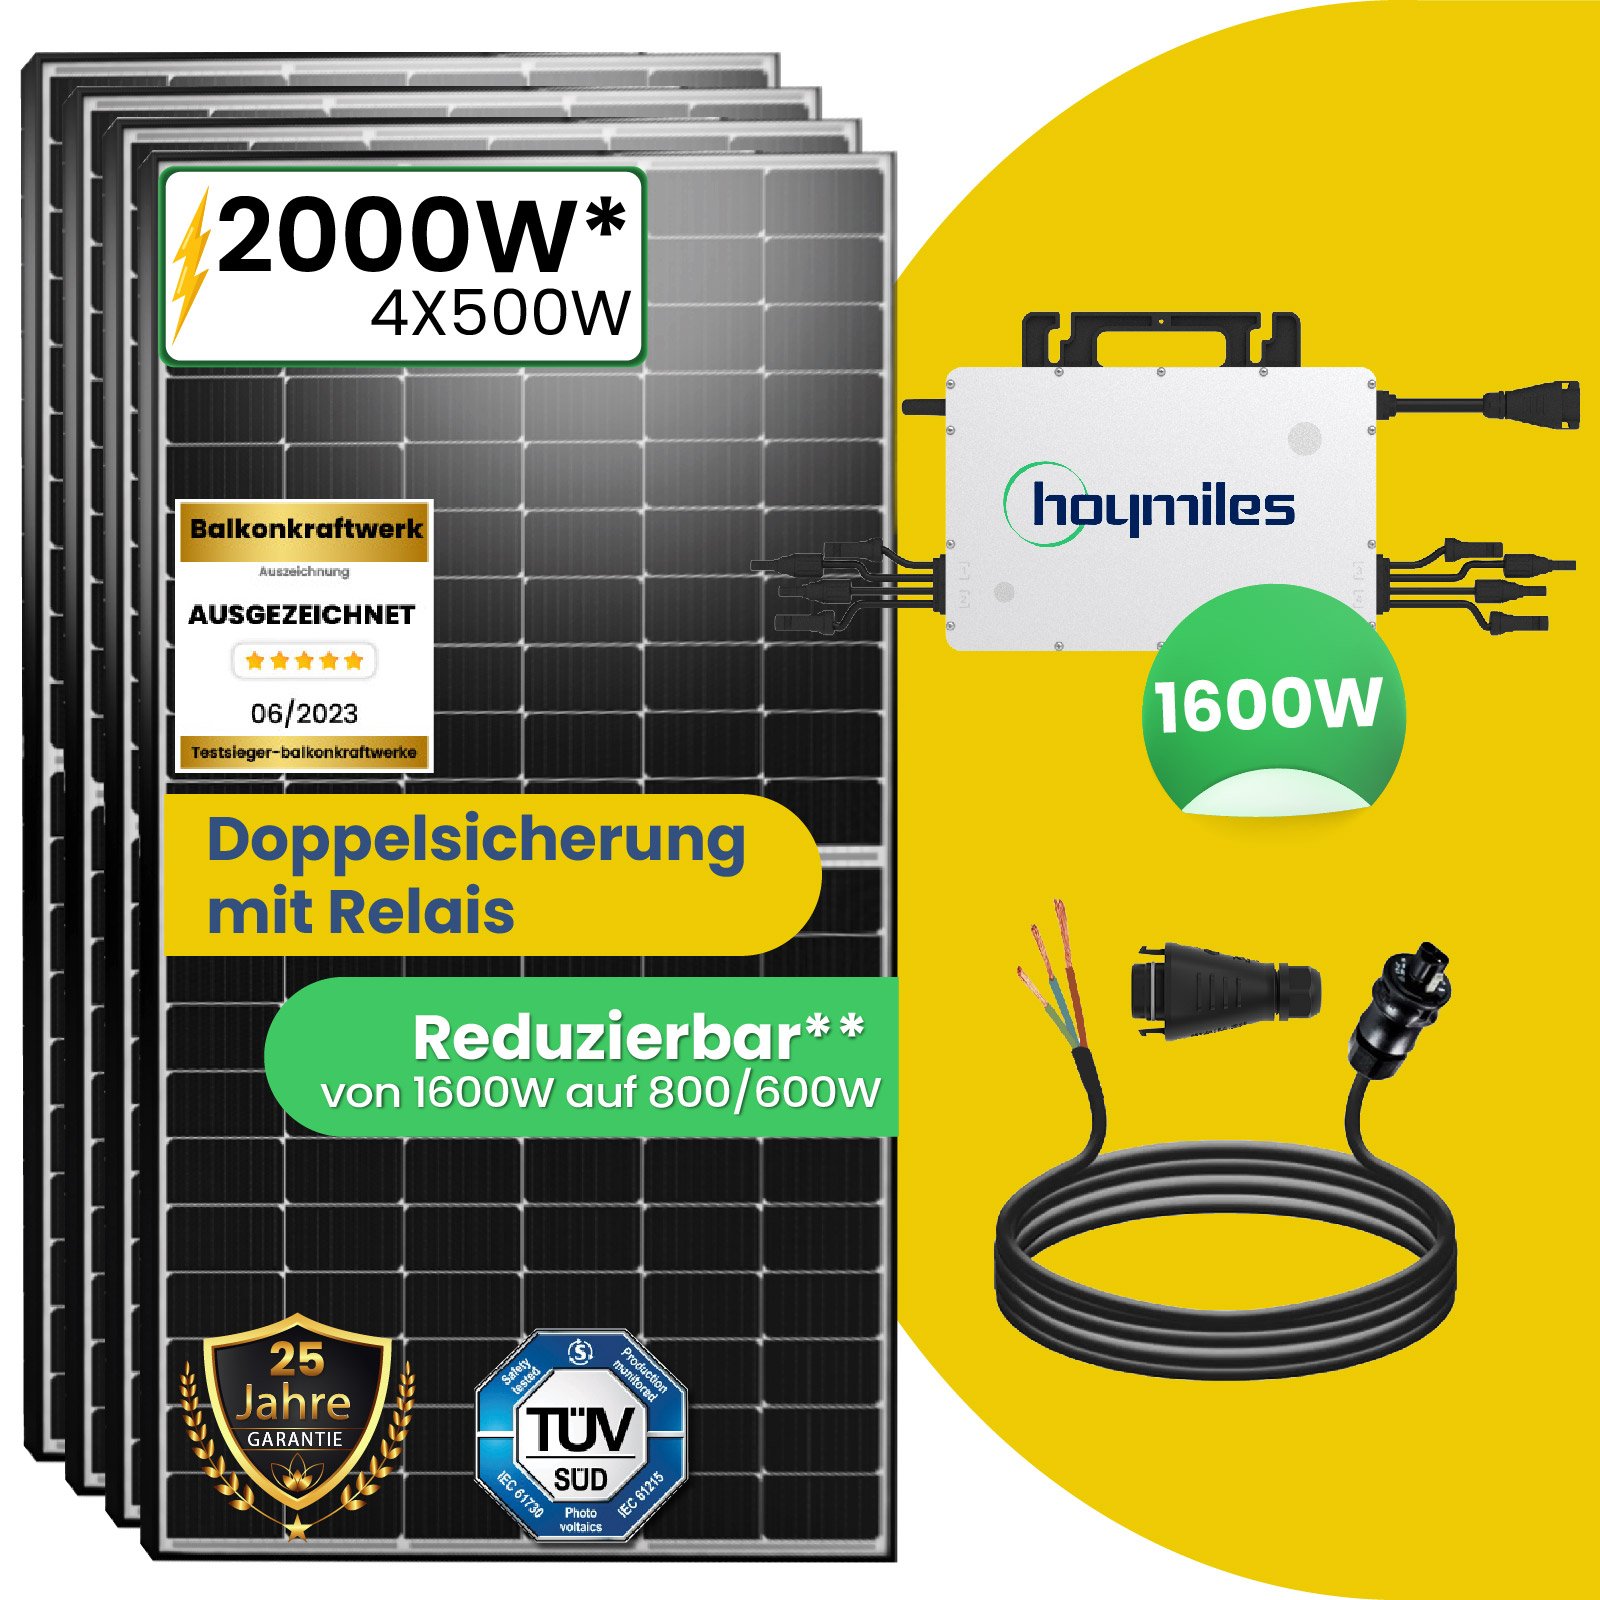 2000W Photovoltaik Balkonkraftwerk mit EPP 500W Solarmodule, Hoymiles  HMS-1600-4T Wechselrichter und 10m Wielandstecker